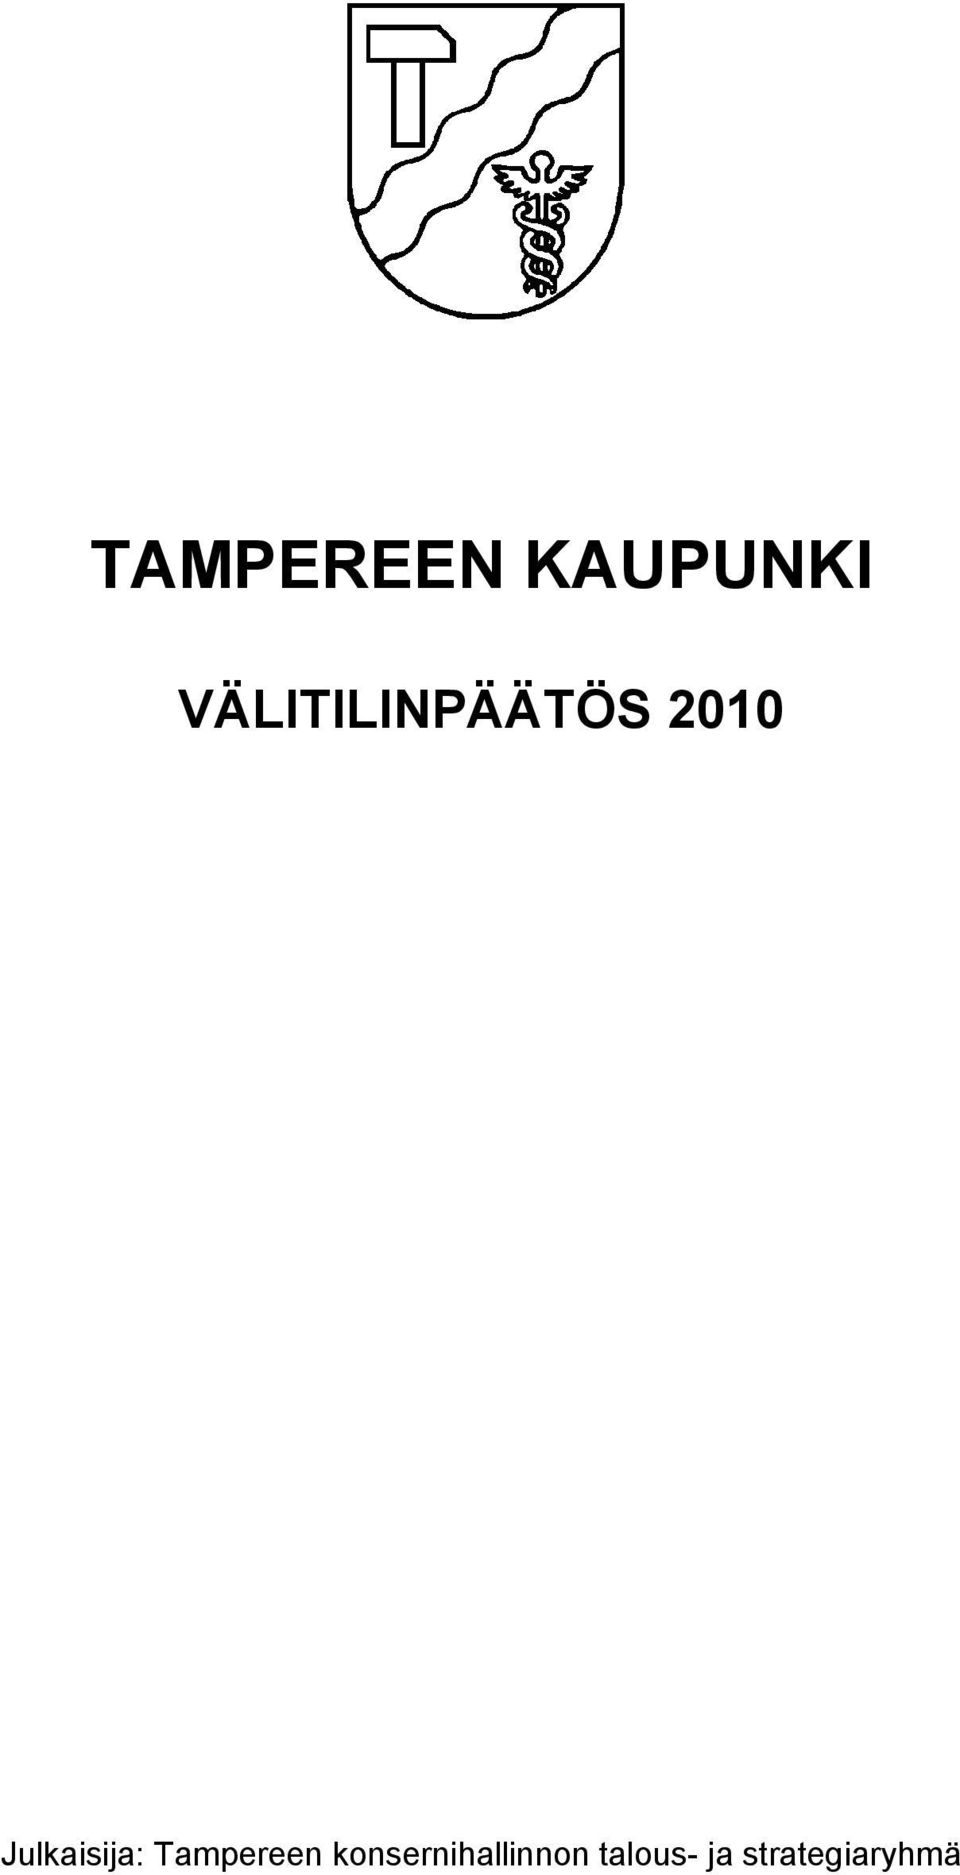 Julkaisija: Tampereen